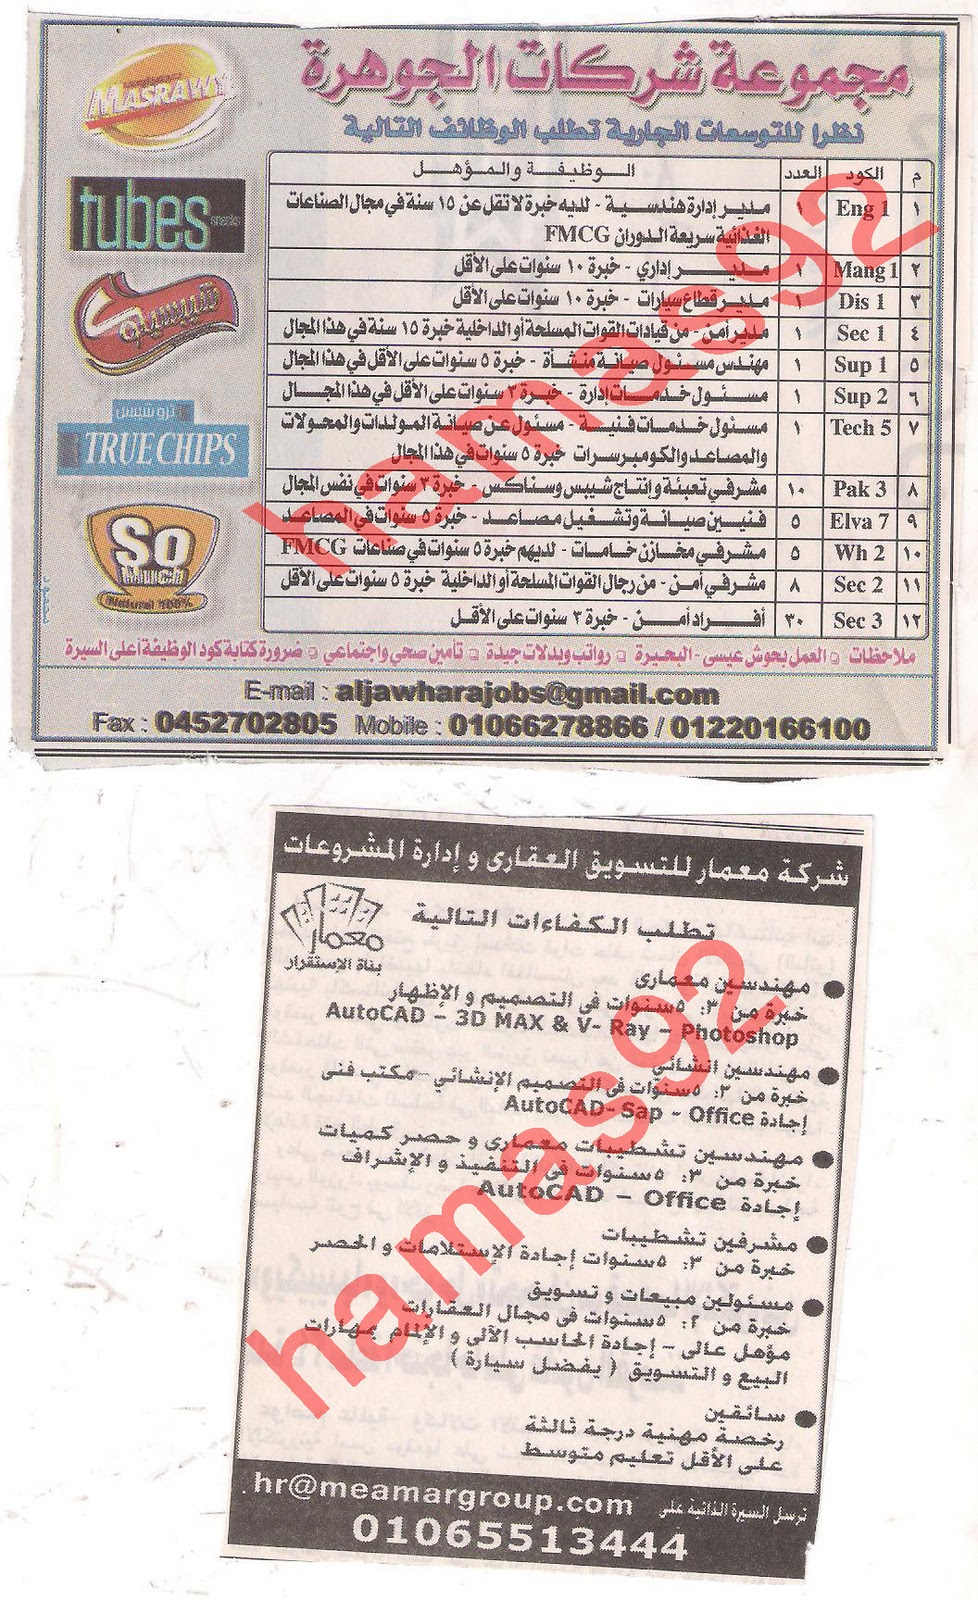 وظائف جريدة الاهرام الجمعة 20\1\2012 , الجزء الثالث Picture+018